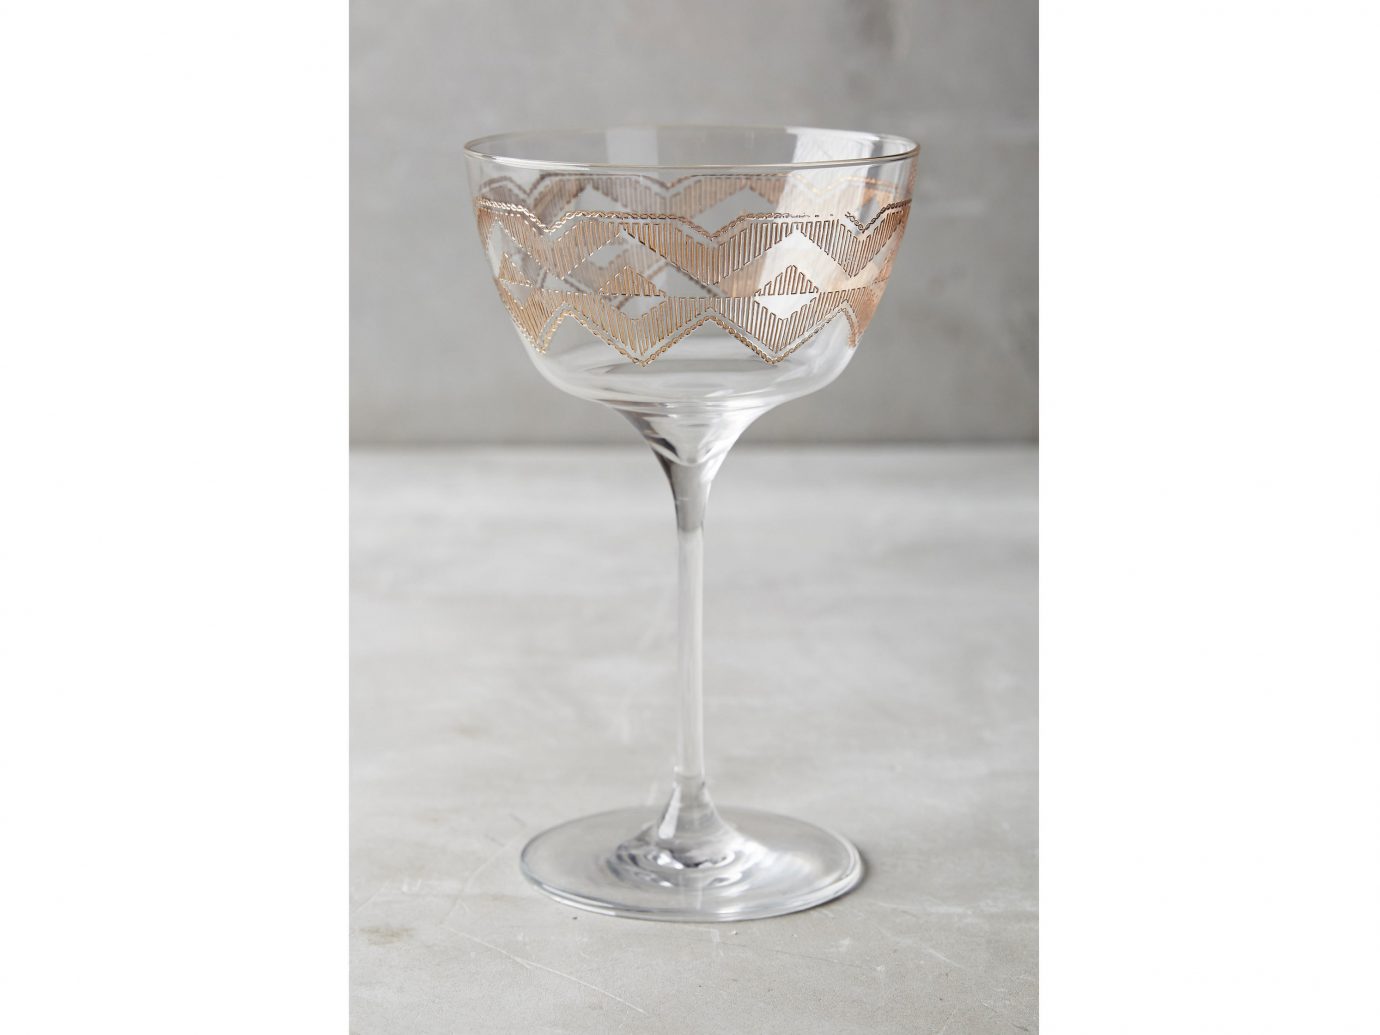 Style + Design container stemware wine glass champagne stemware martini glass drinkware glass tableware material champagne chalice